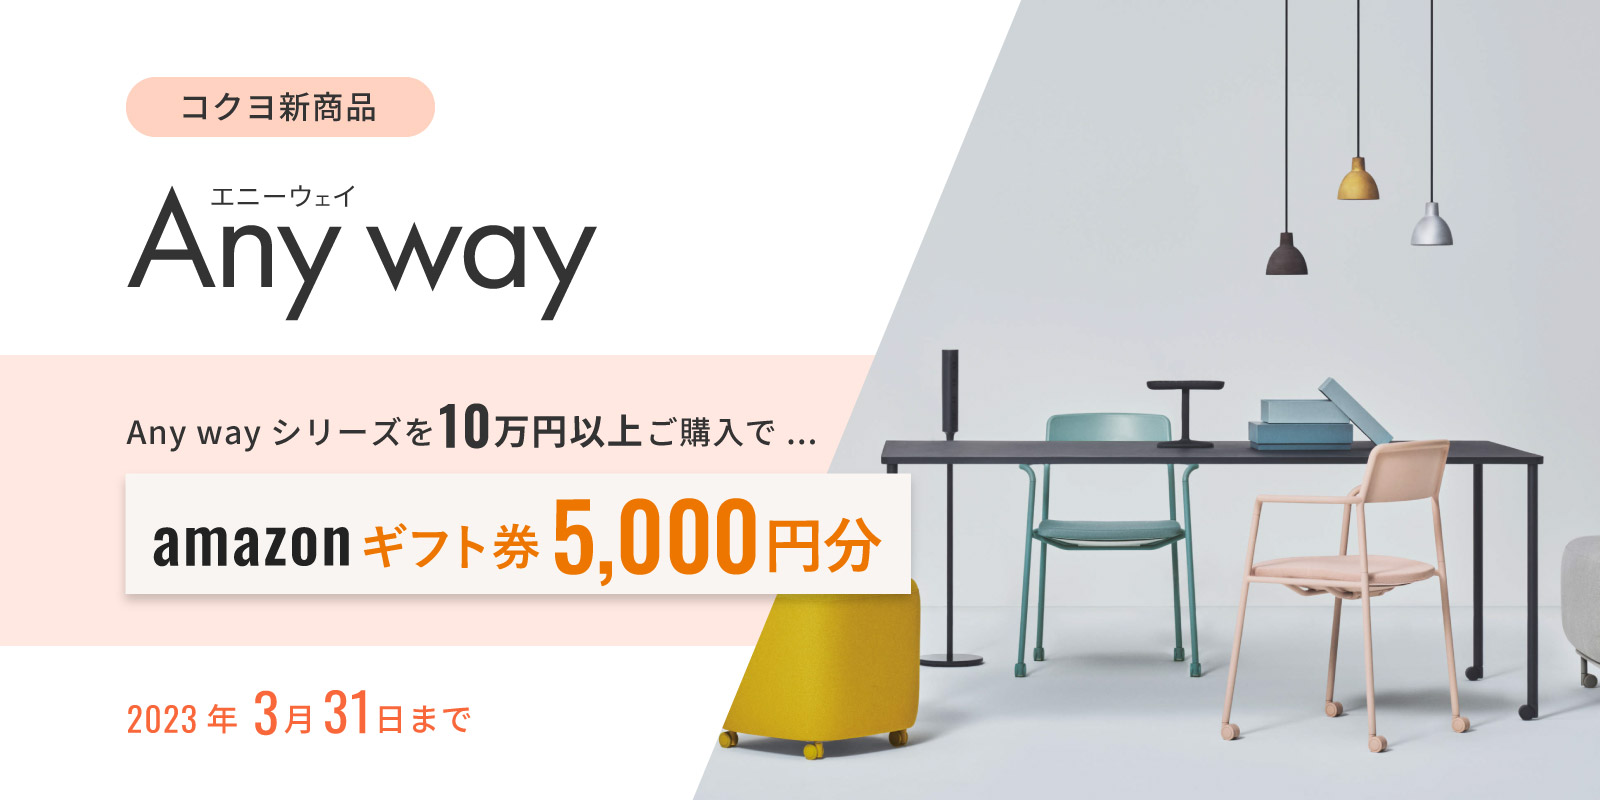 コクヨの新商品 Any Way 10万円以上購入でアマゾンギフト券5,000円プレゼント